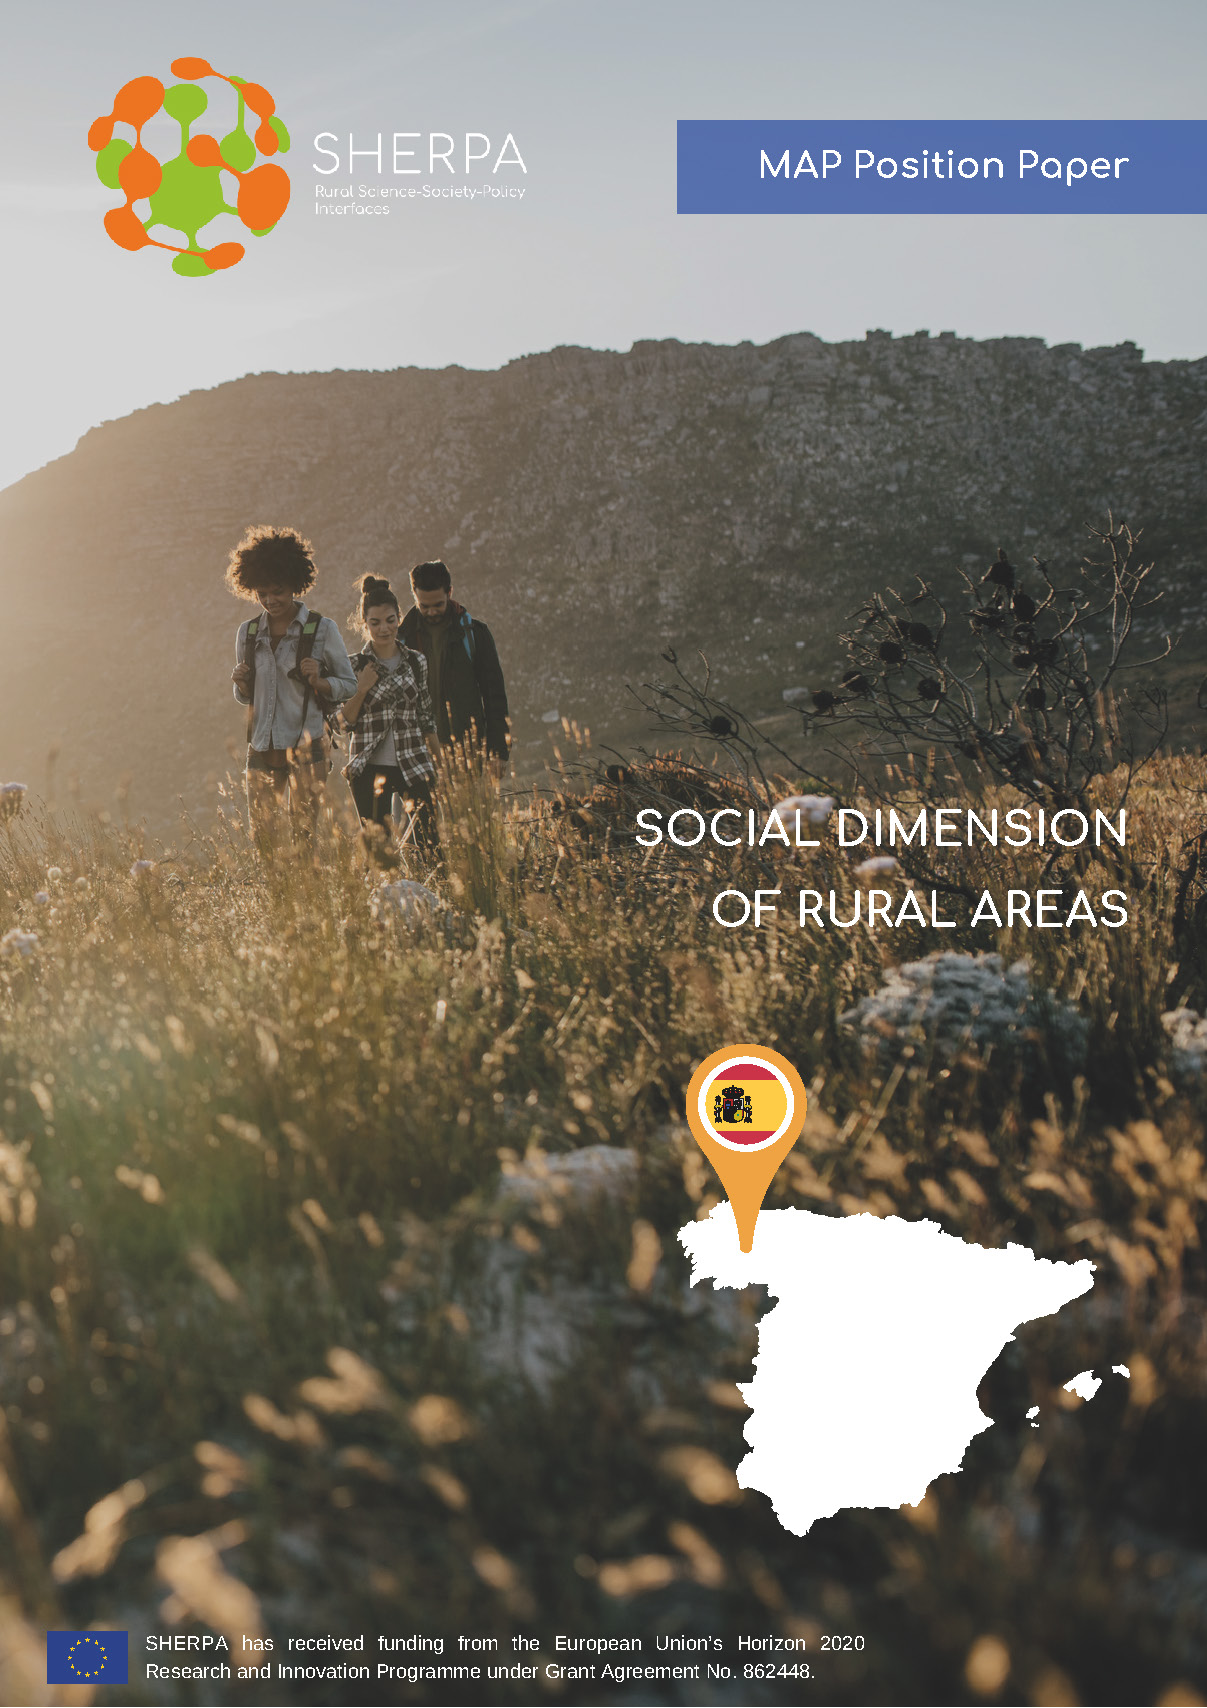 La MAP gallega publica sus reflexiones sobre la dimensión social de las áreas rurales 